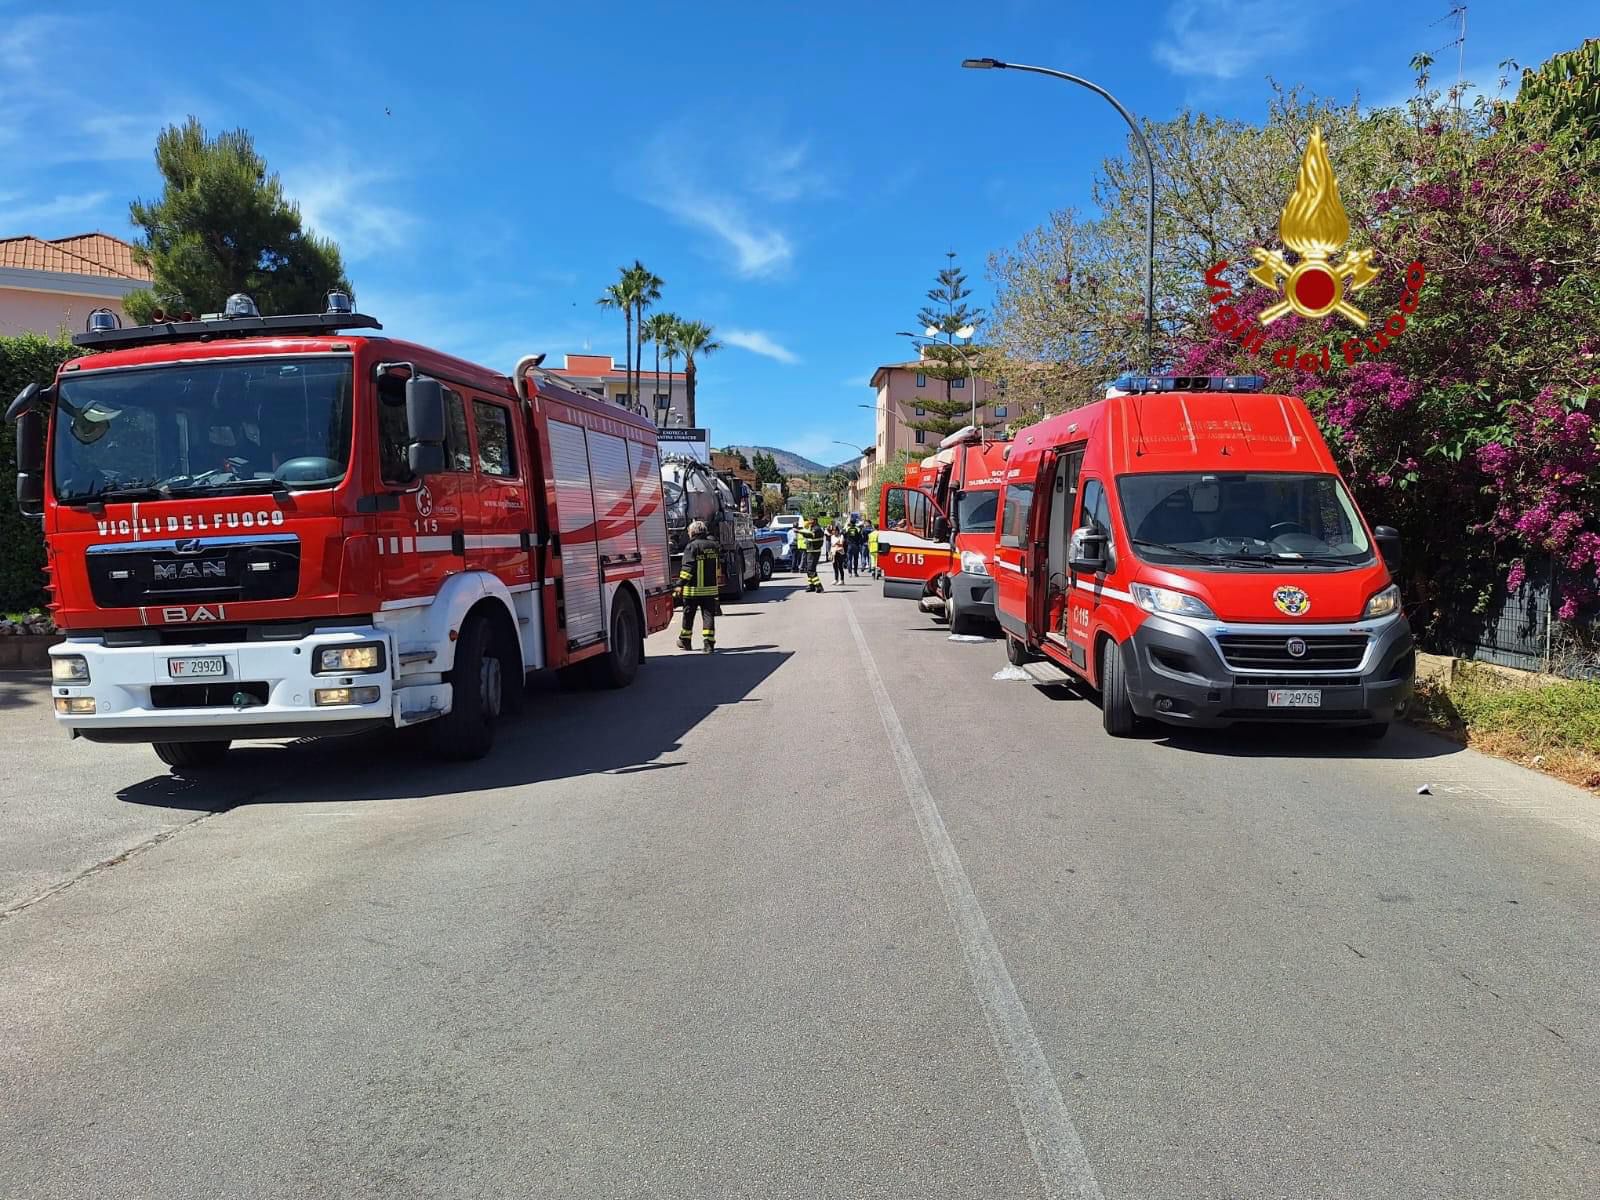 Tragedia sul lavoro a Casteldaccia: 5 operai morti e 2 feriti, uno in gravi condizioni